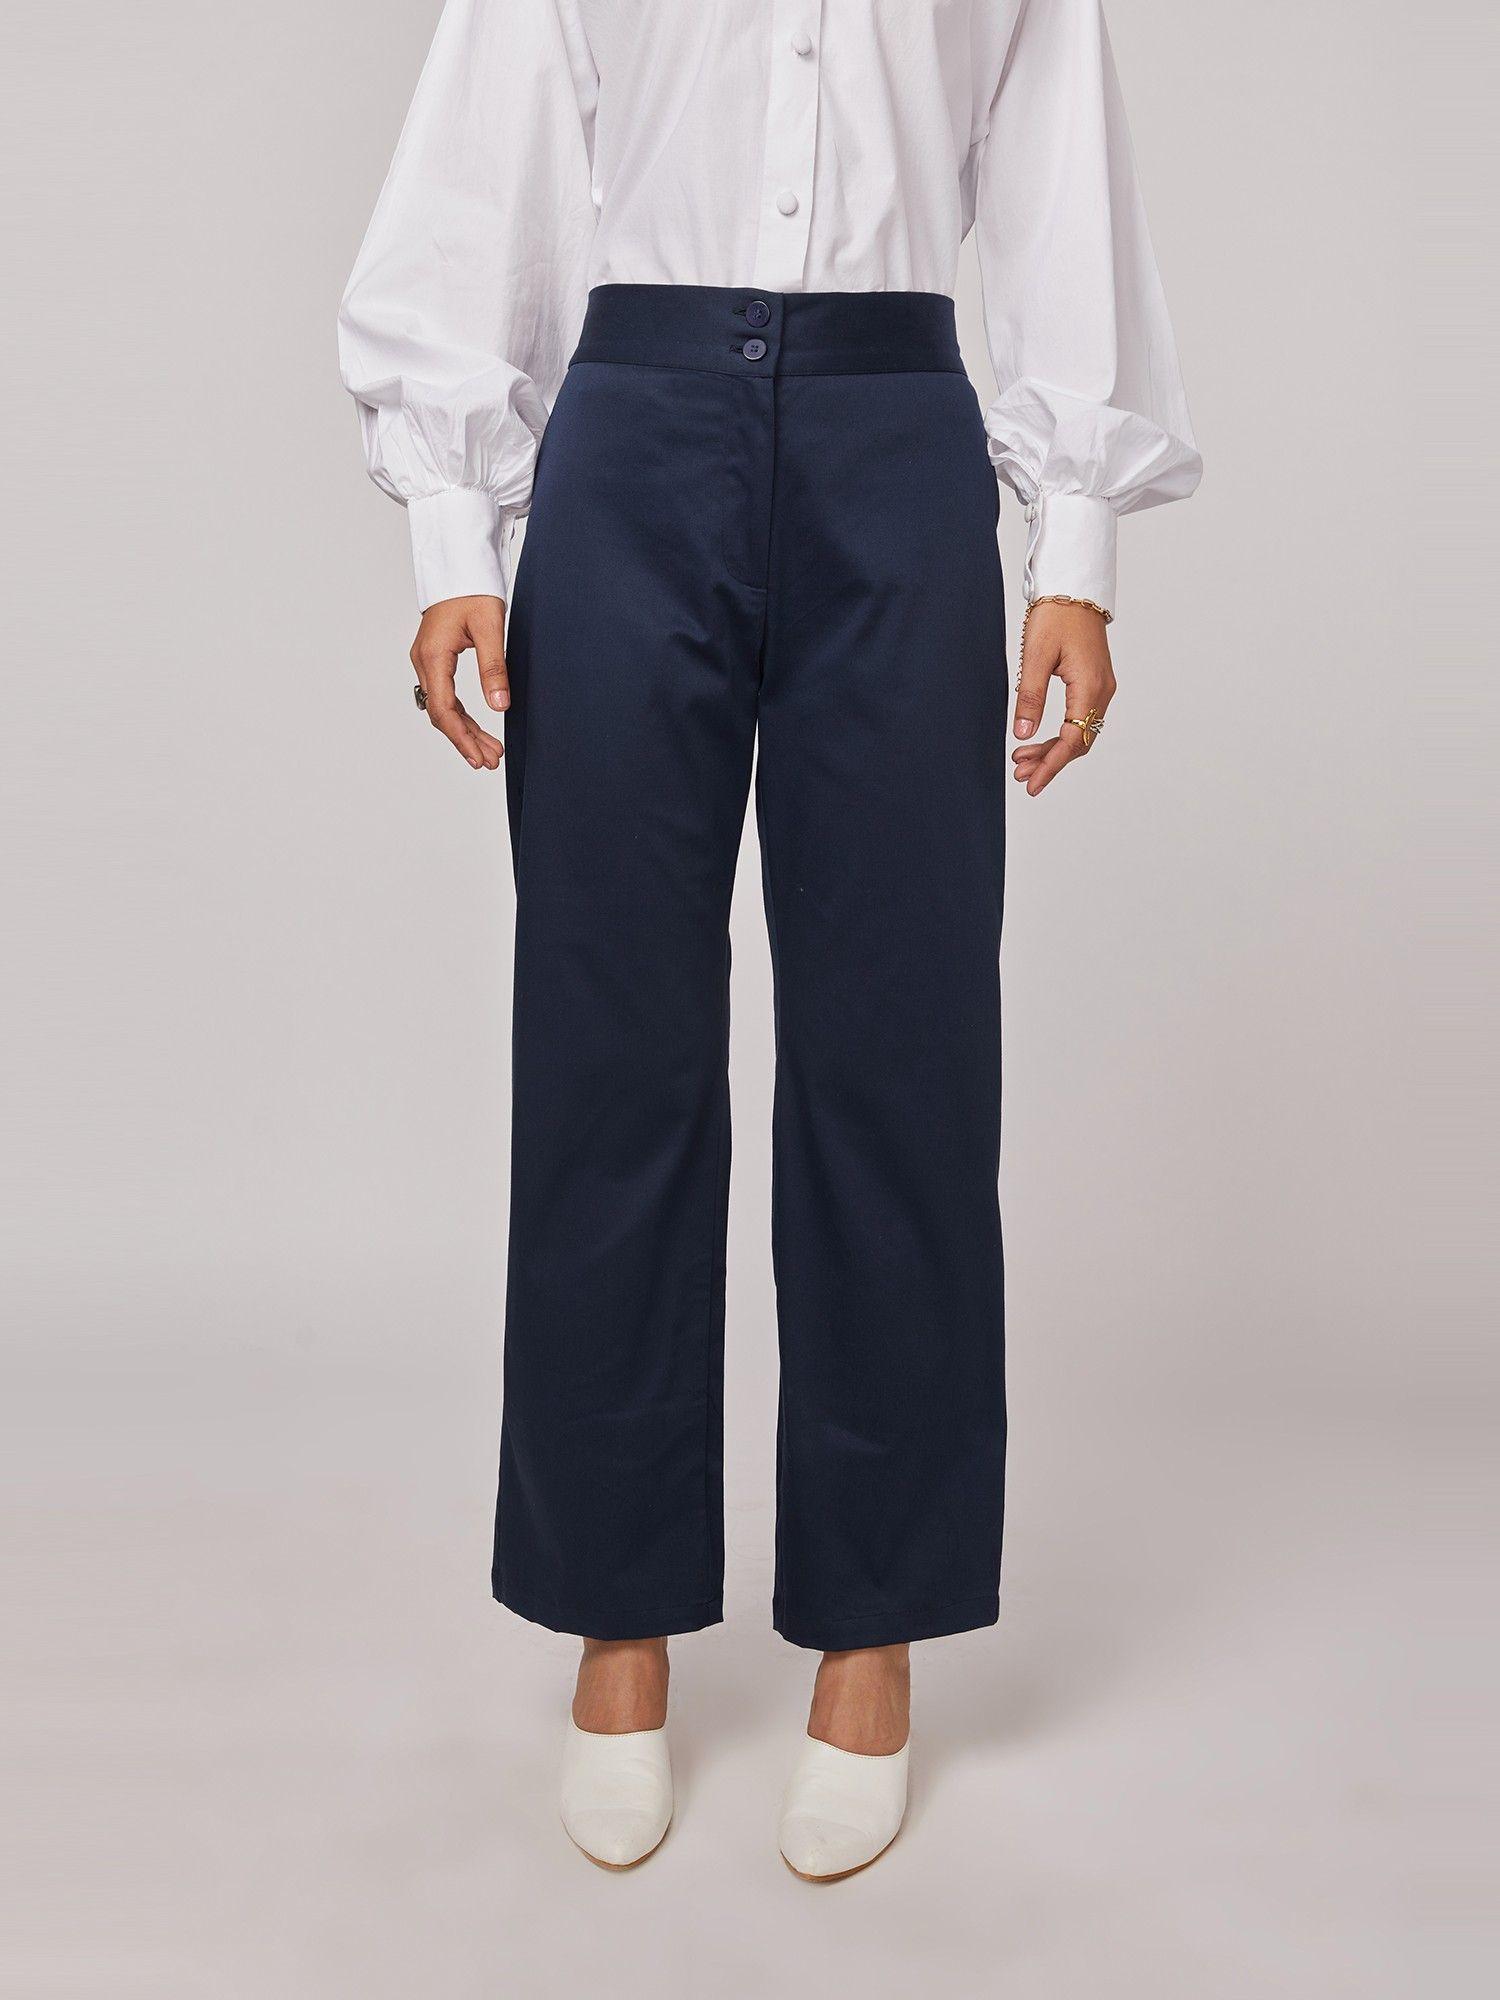 navy blue wide legged trouser